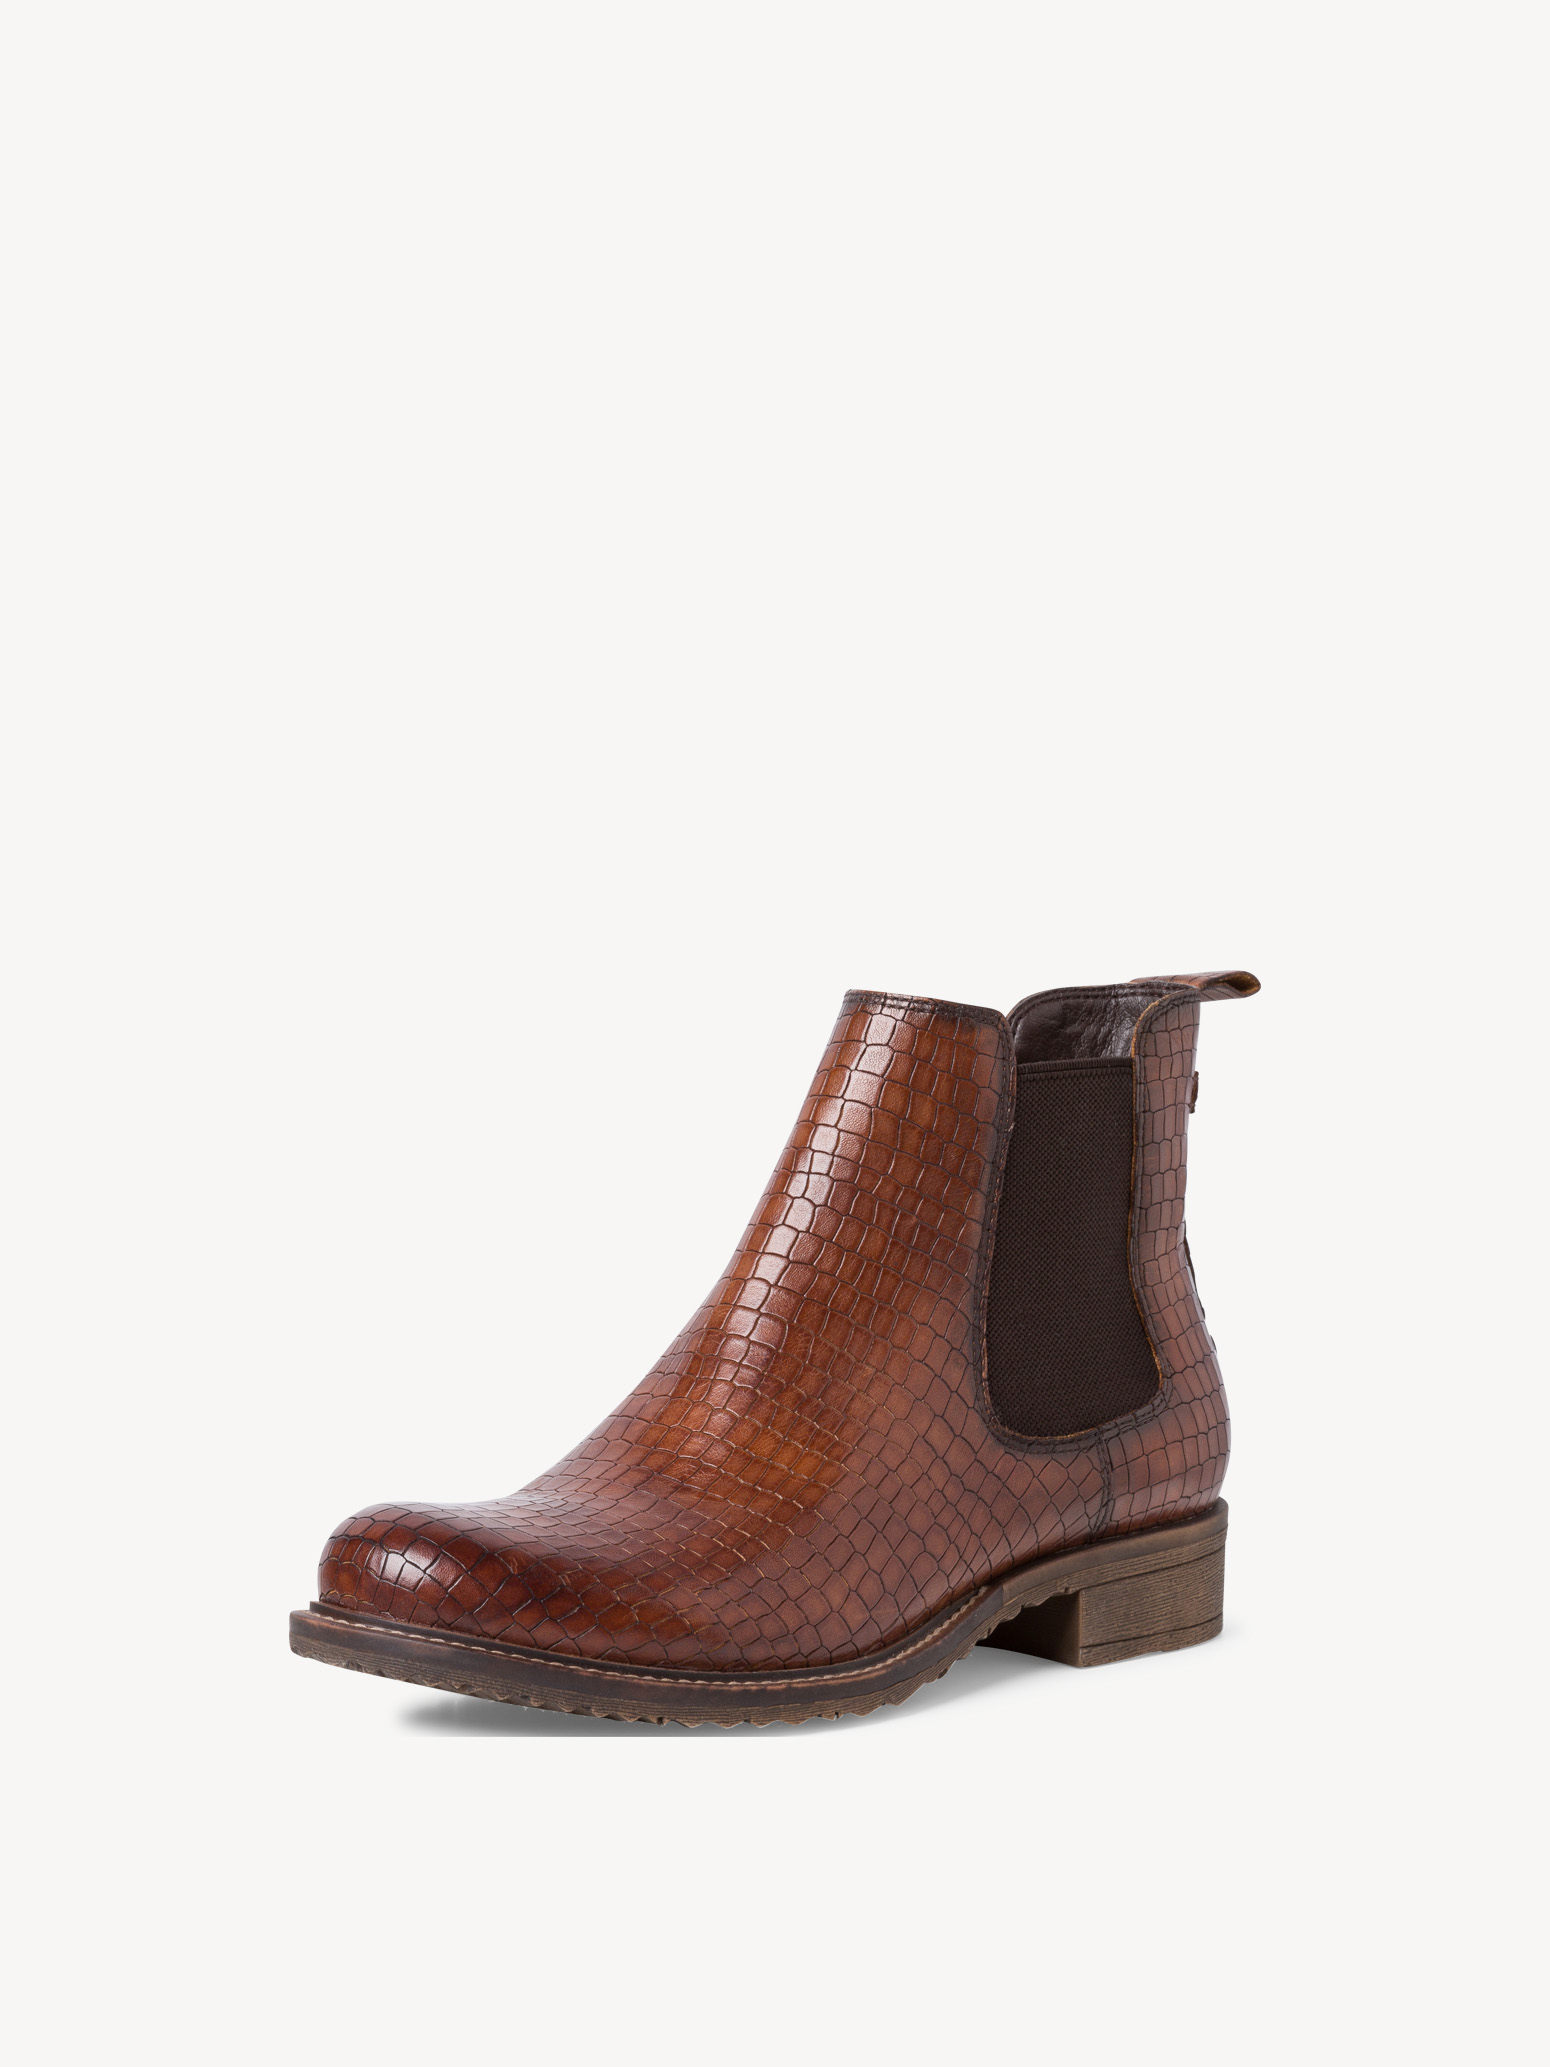 Ботинки женские (коричневый/крокодиловый узор) - изображение №1